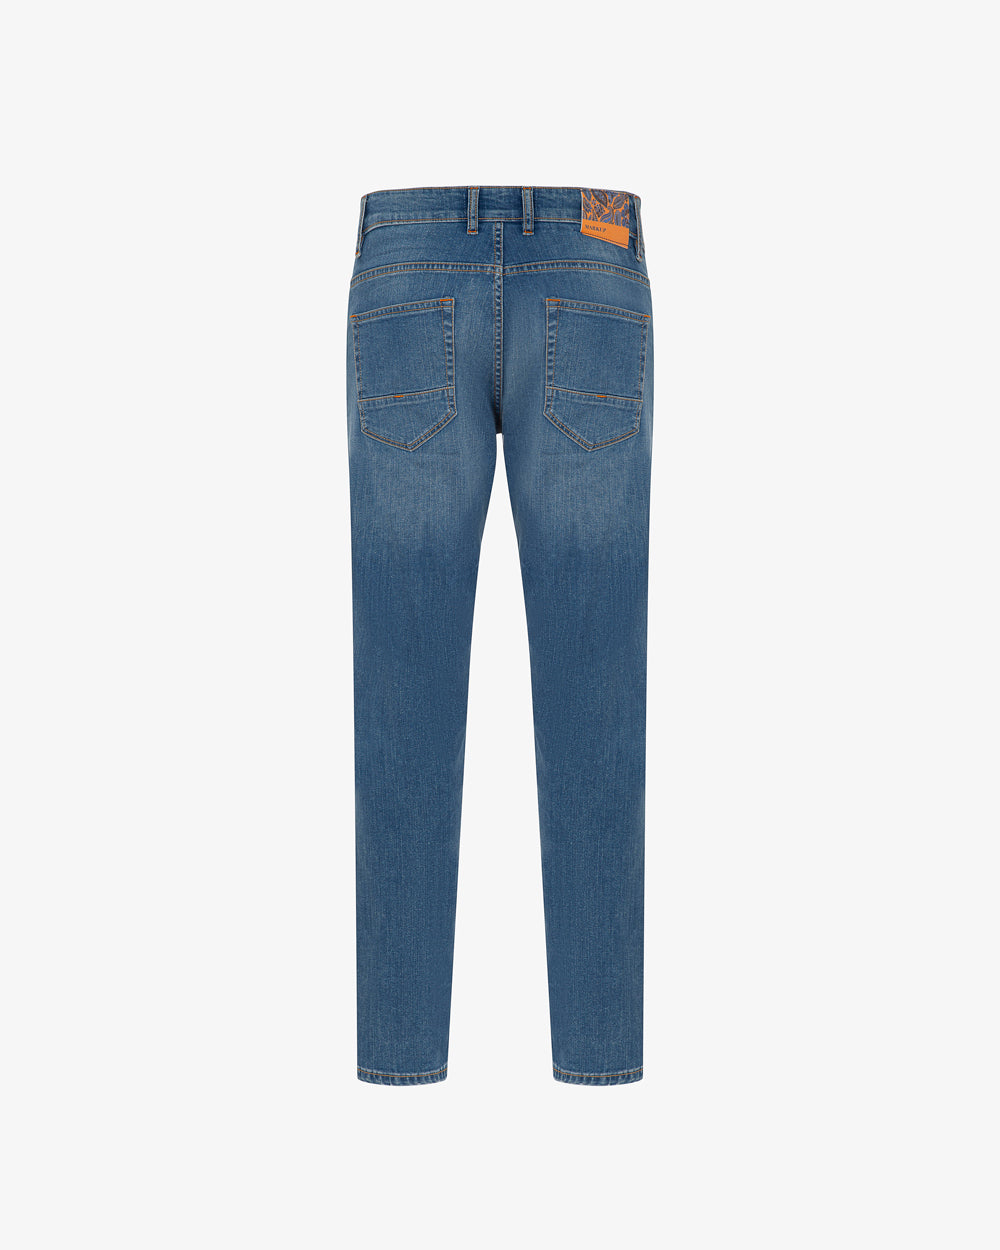 Calça jeans MarkUp